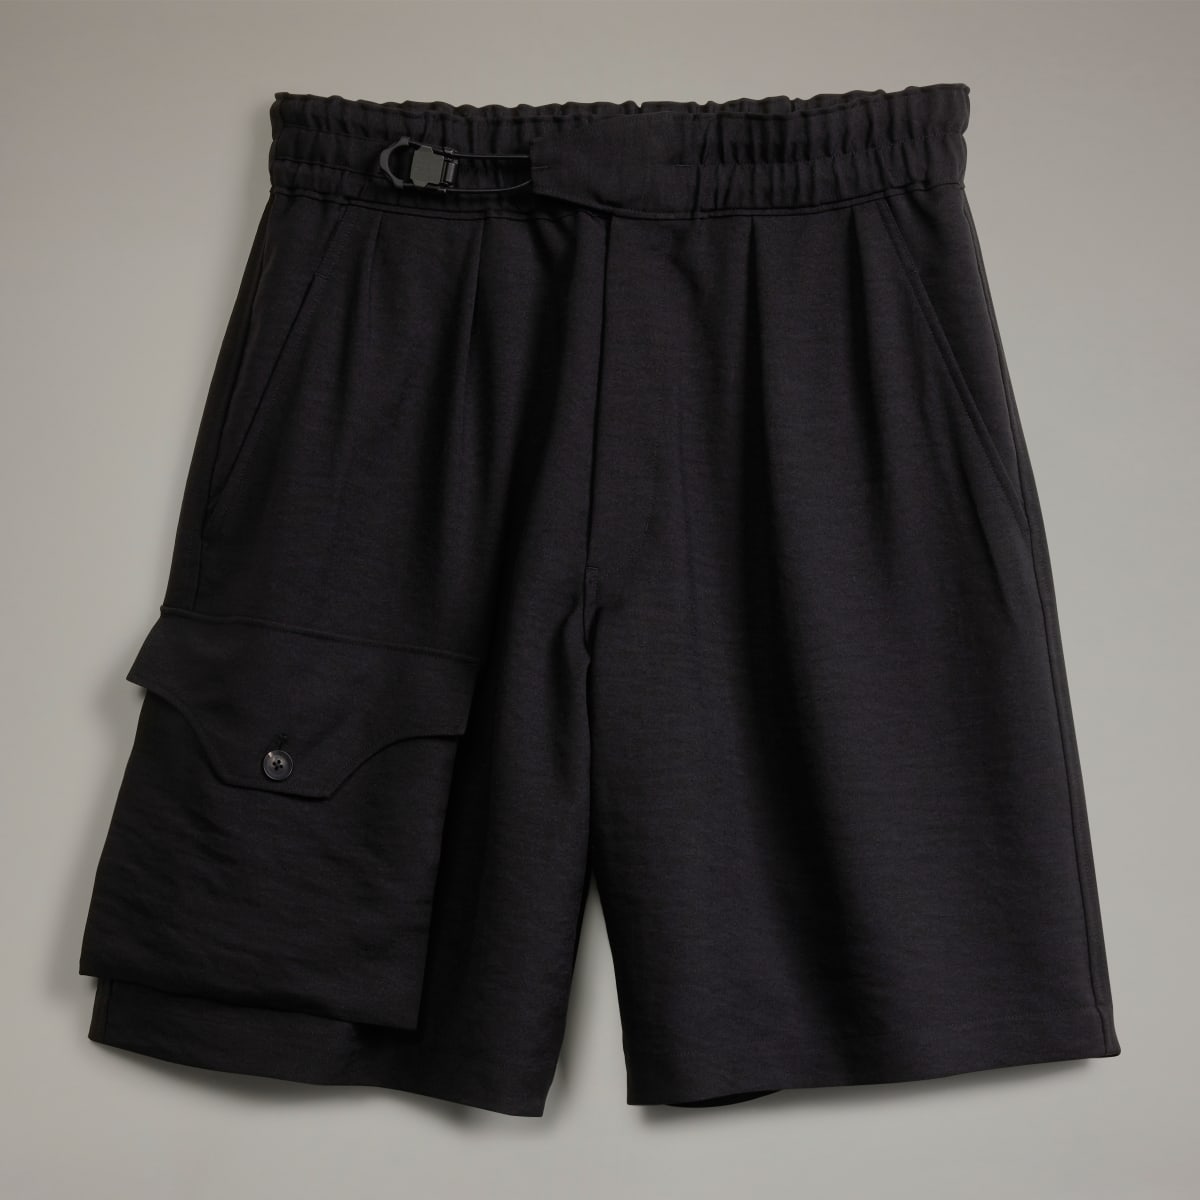 Adidas Y-3 Sport Uniform Shorts. 5